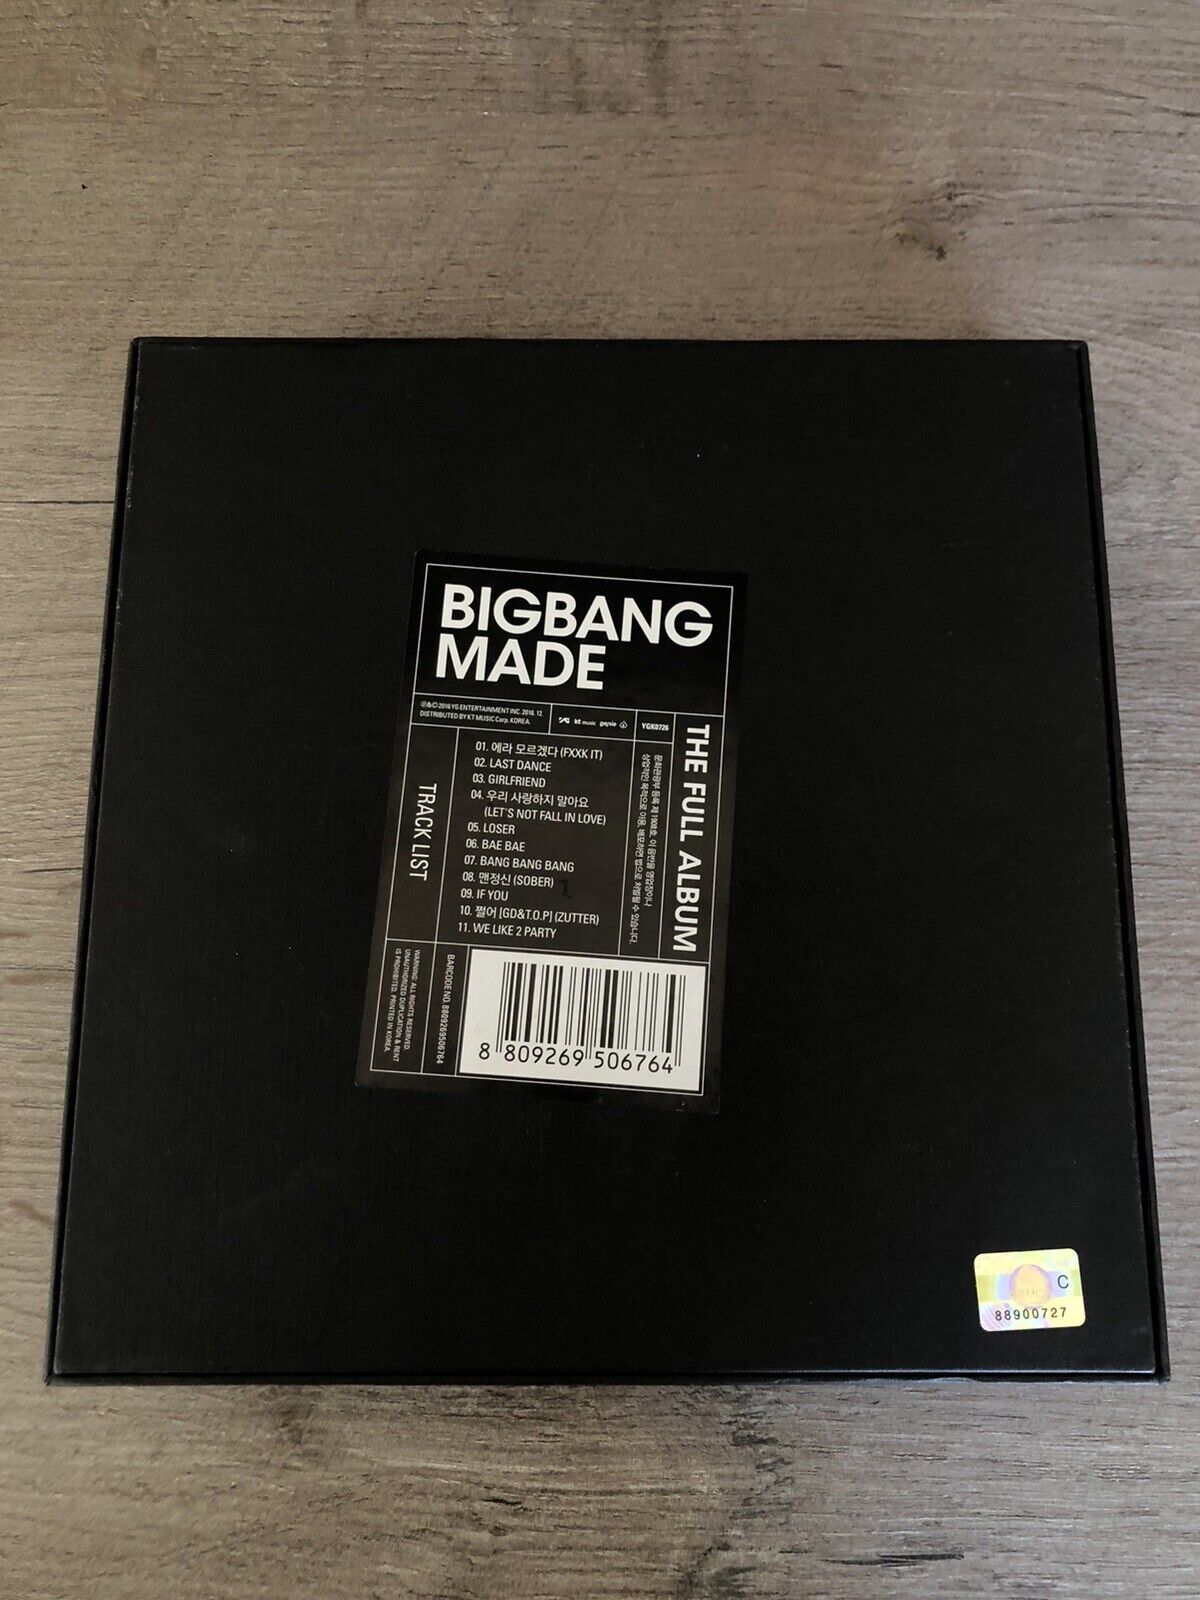 BigBang 'Made' Album - Group Edition - Kpop